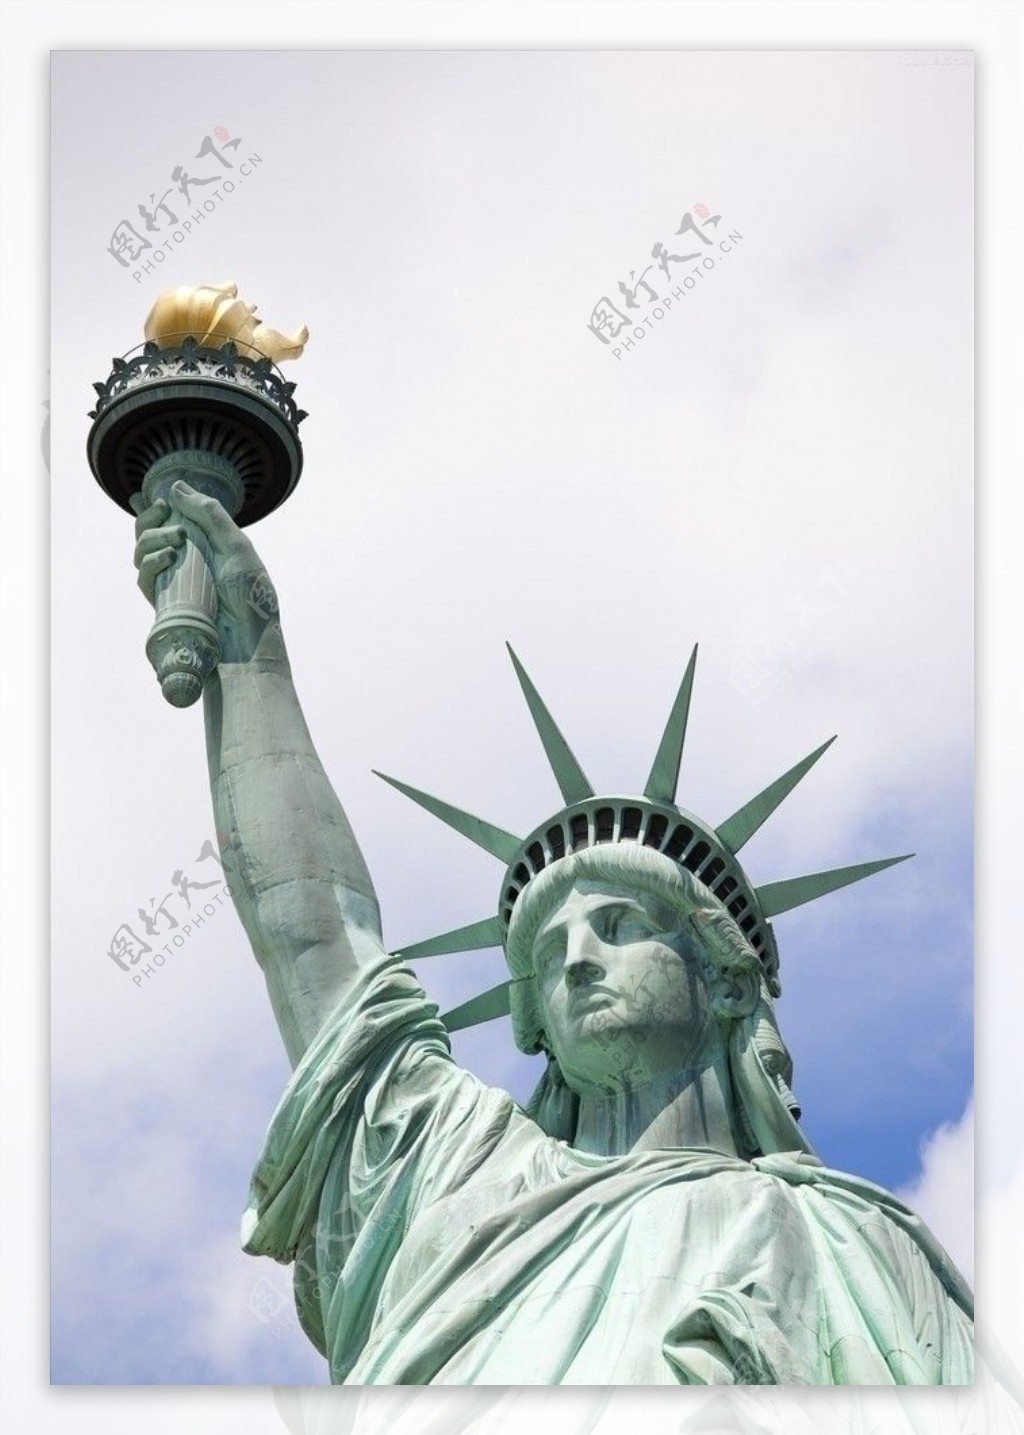 自由女神美国纽约图片